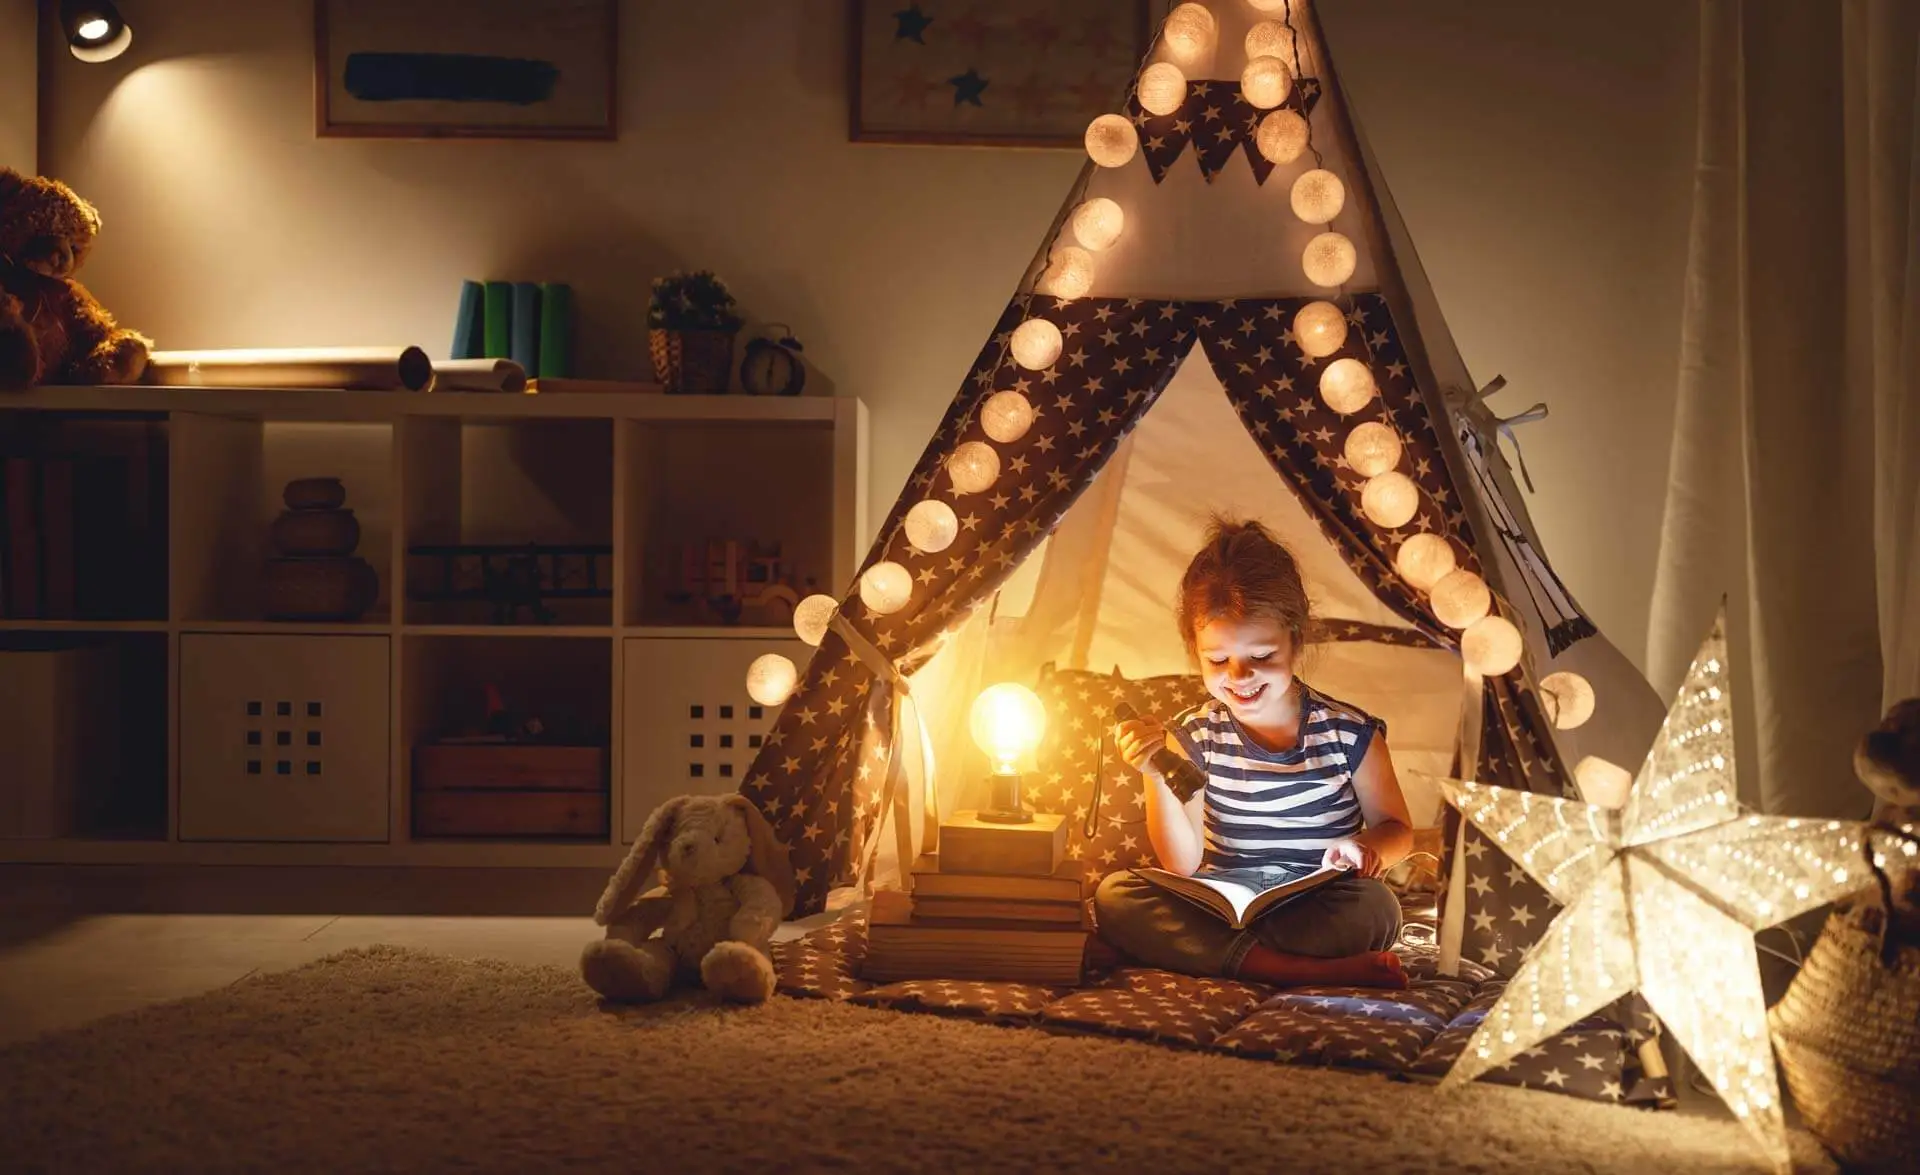 Ein kleines Mädchen sitzt in seinem Kinderzimmer und spielt in einem kleinen Zelt, welches mit einer Lichterkette dekoriert ist.